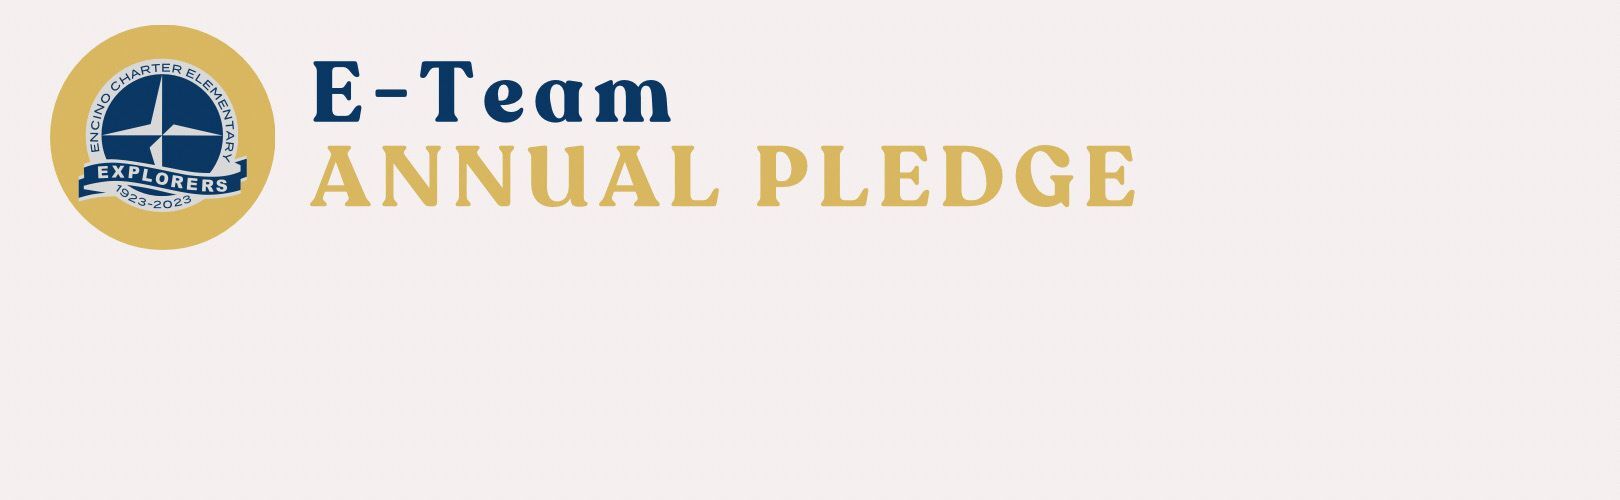 E-Team Pledge